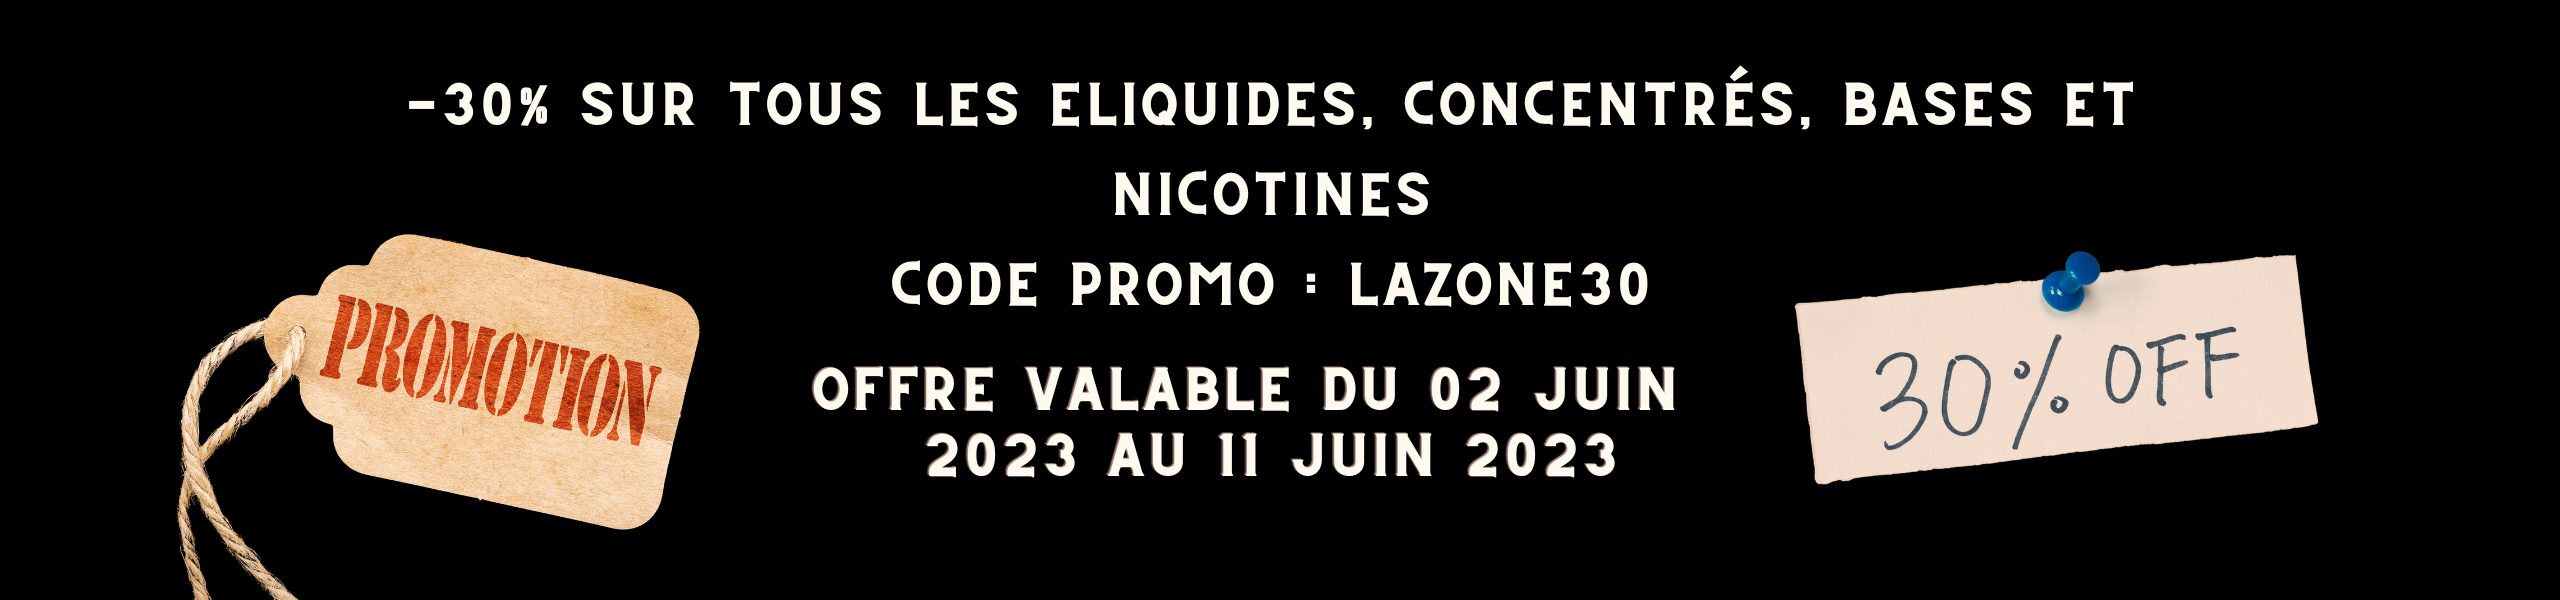 -30% sur tous les Eliquides, Concentrés, Bases et nicotines Code promo LAZONE30 (5)